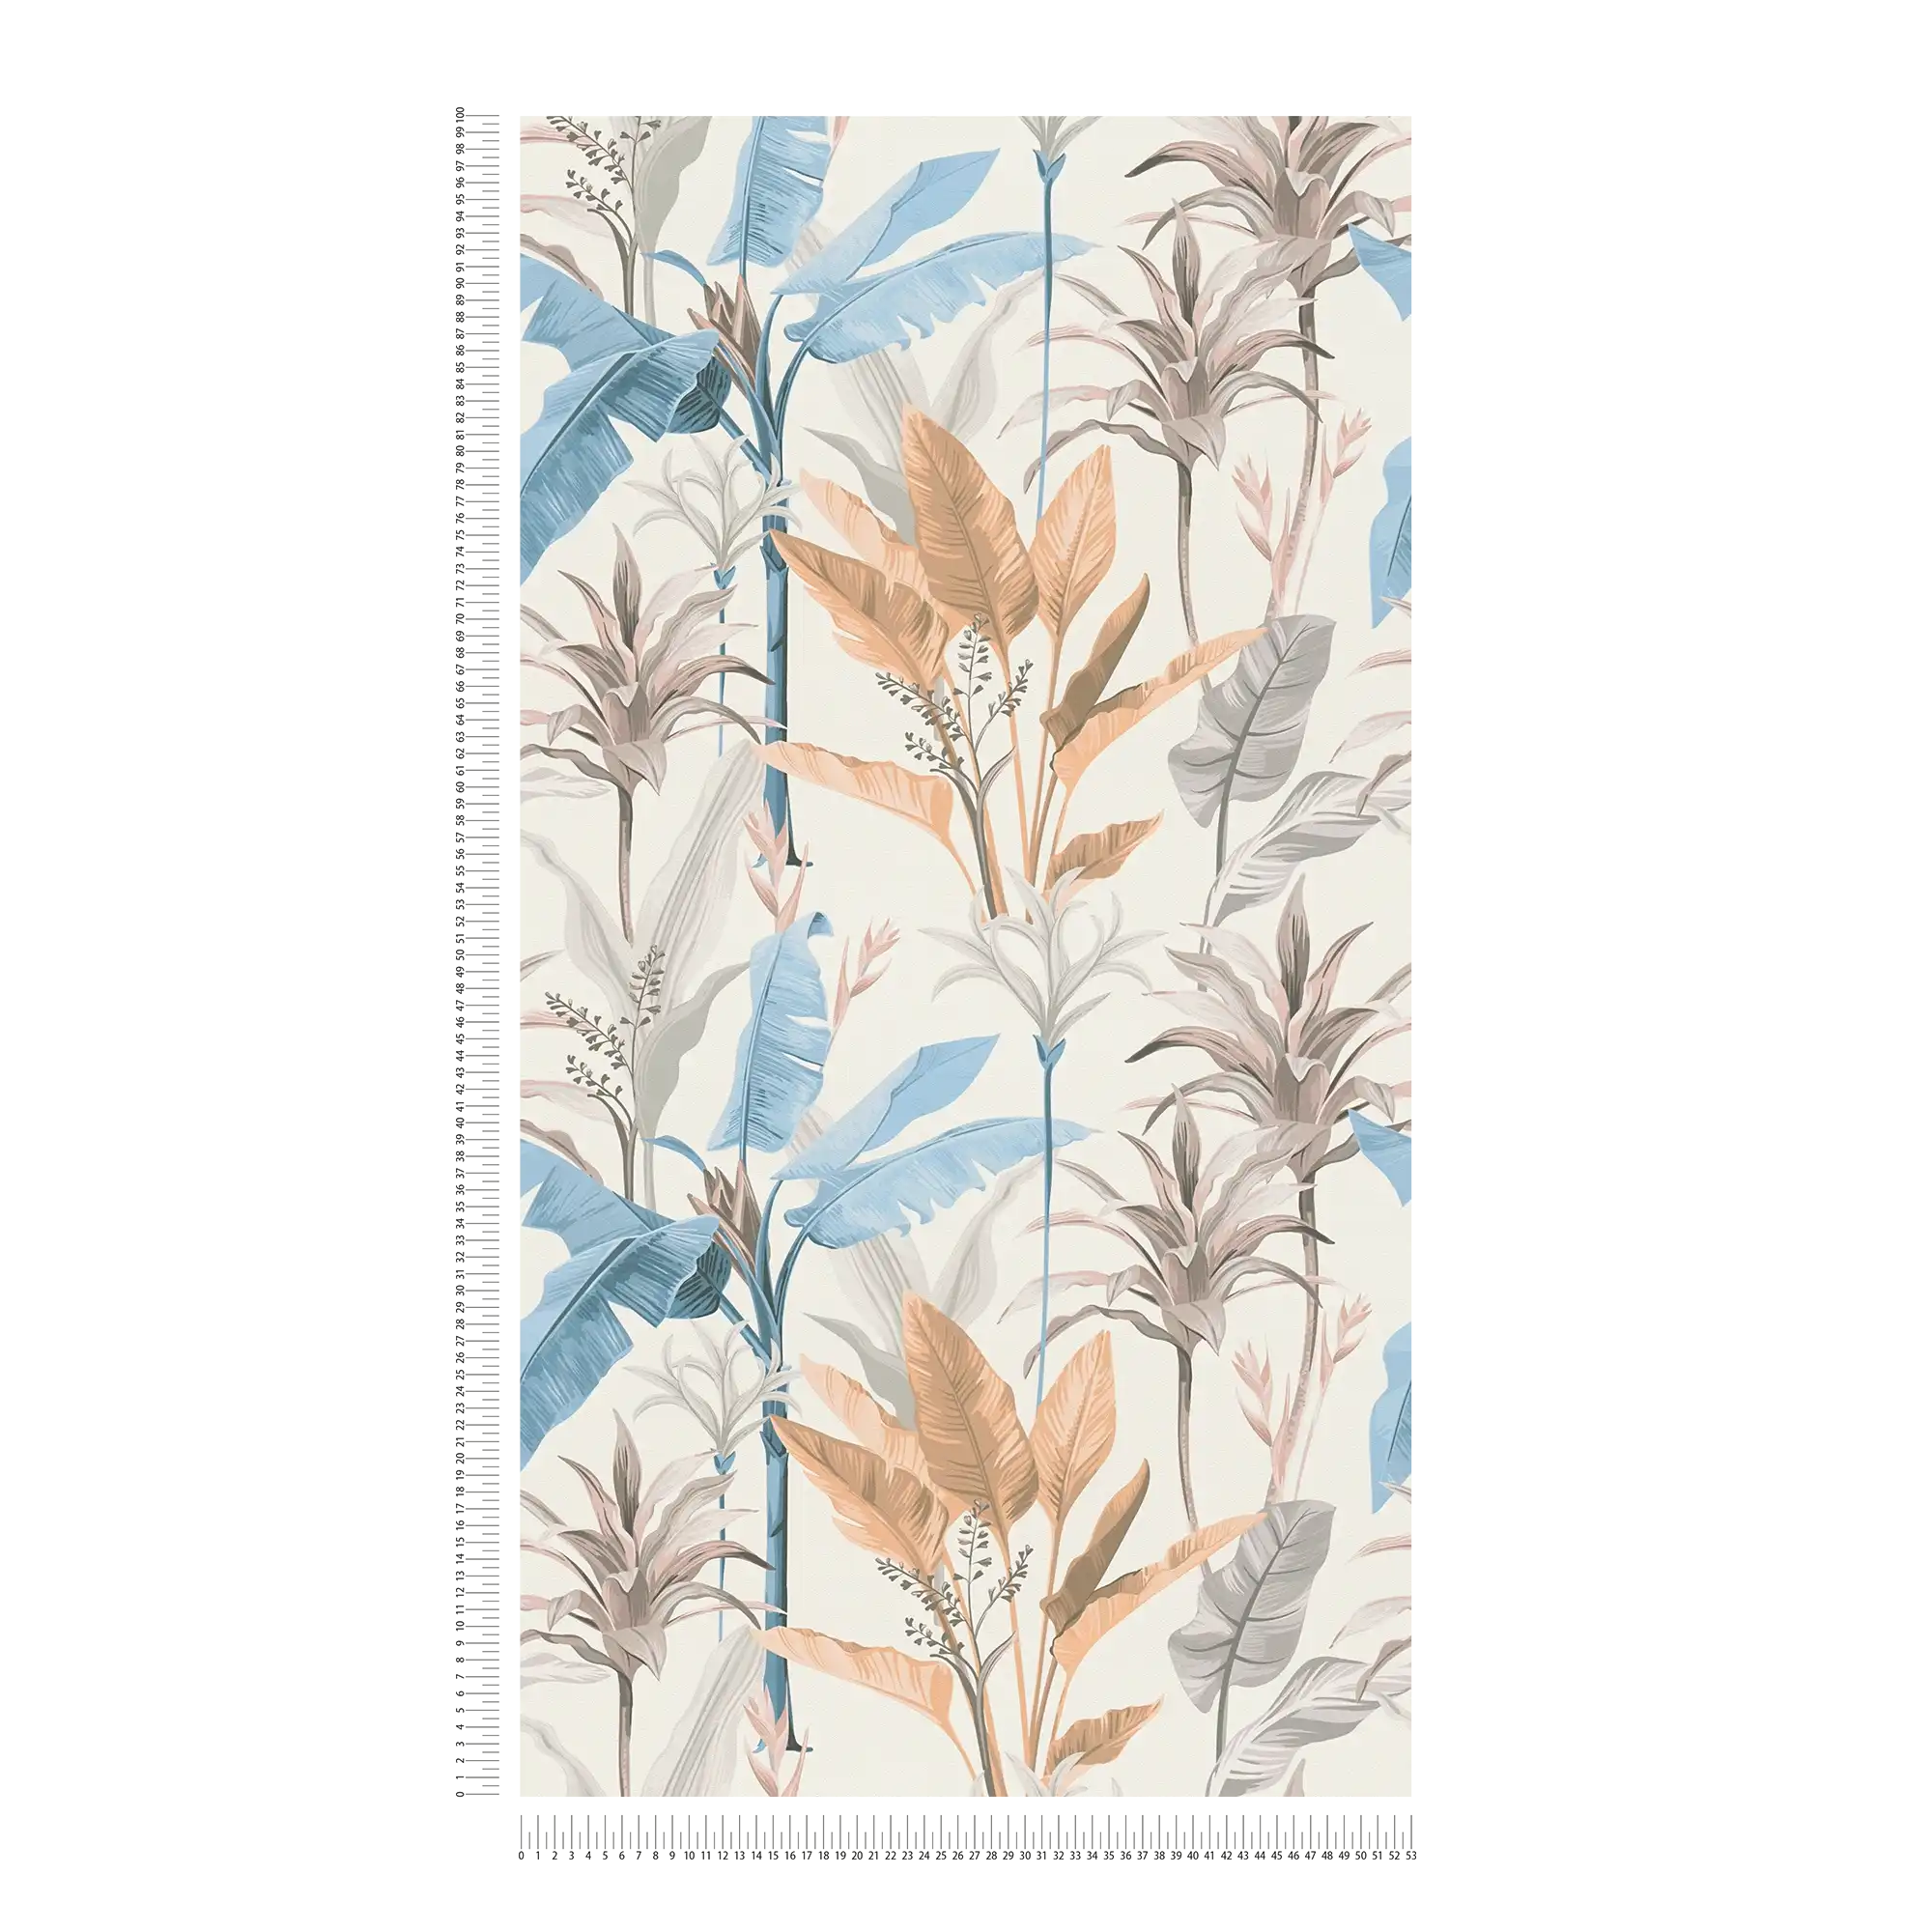             Papel pintado no tejido con detalles florales y estampado de hojas - Azul, Gris, Crema
        